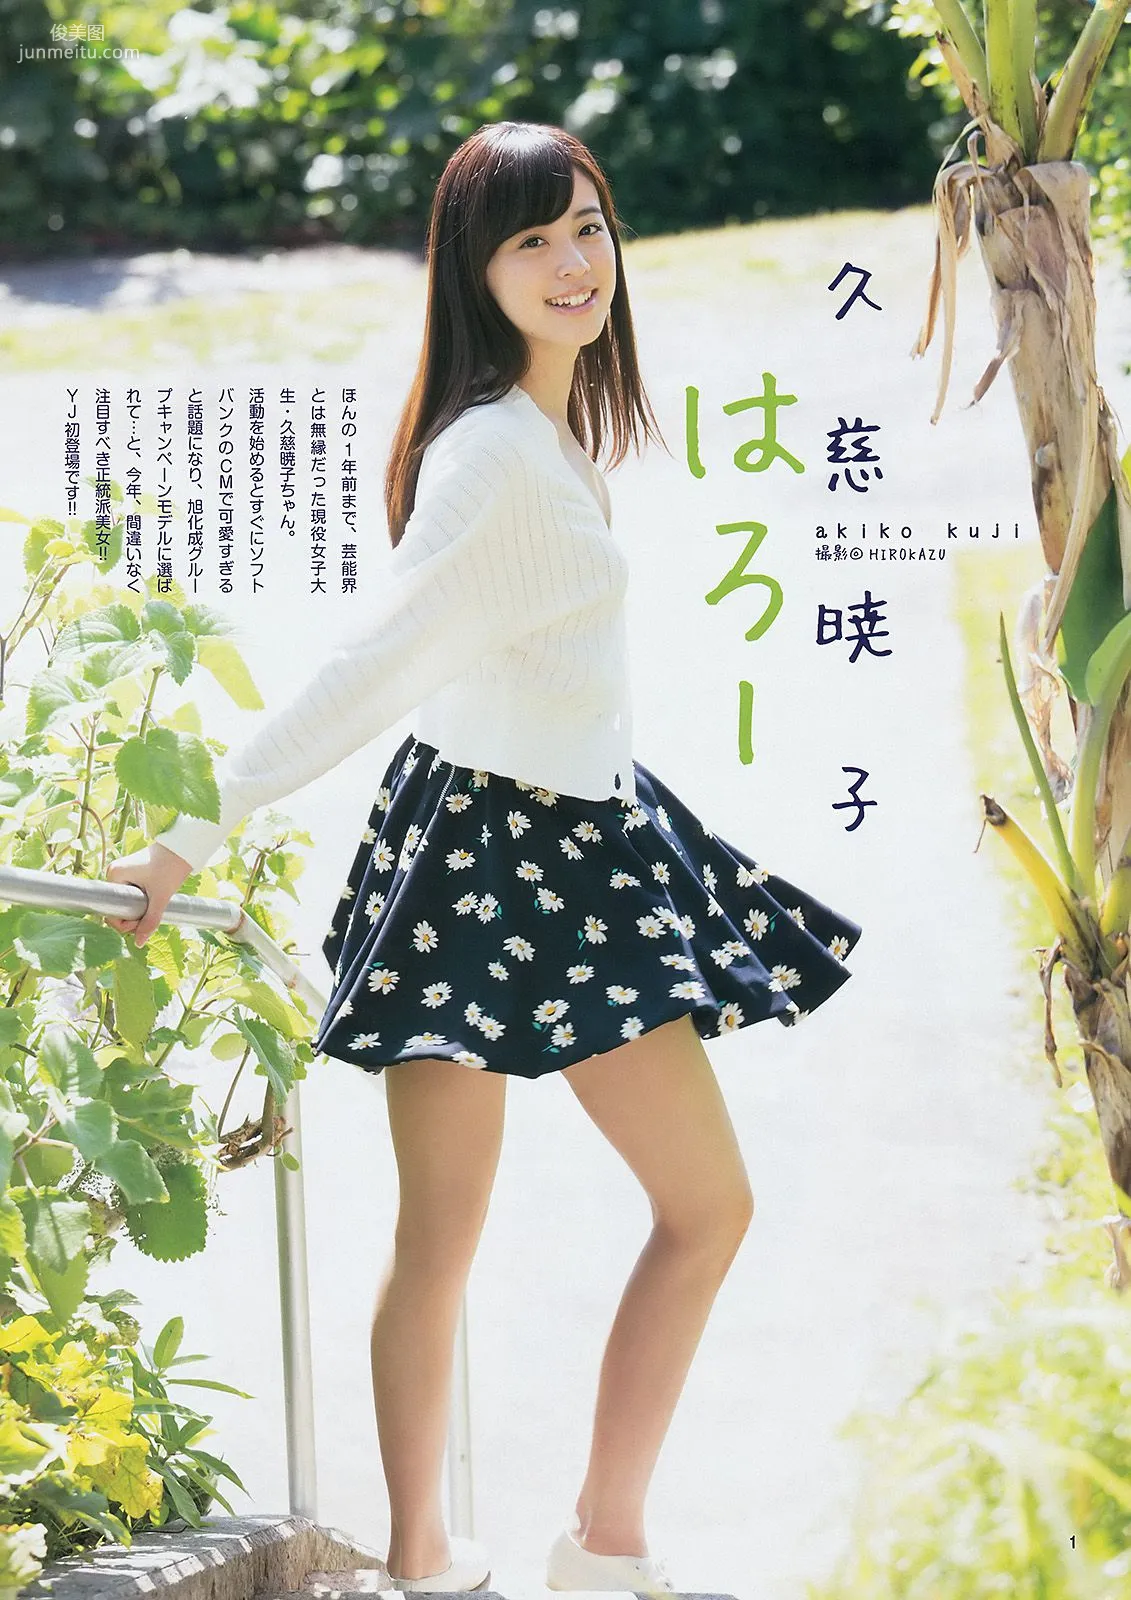 山本彩 48グループ 久慈暁子 [Weekly Young Jump] 2014年No.17 写真杂志8